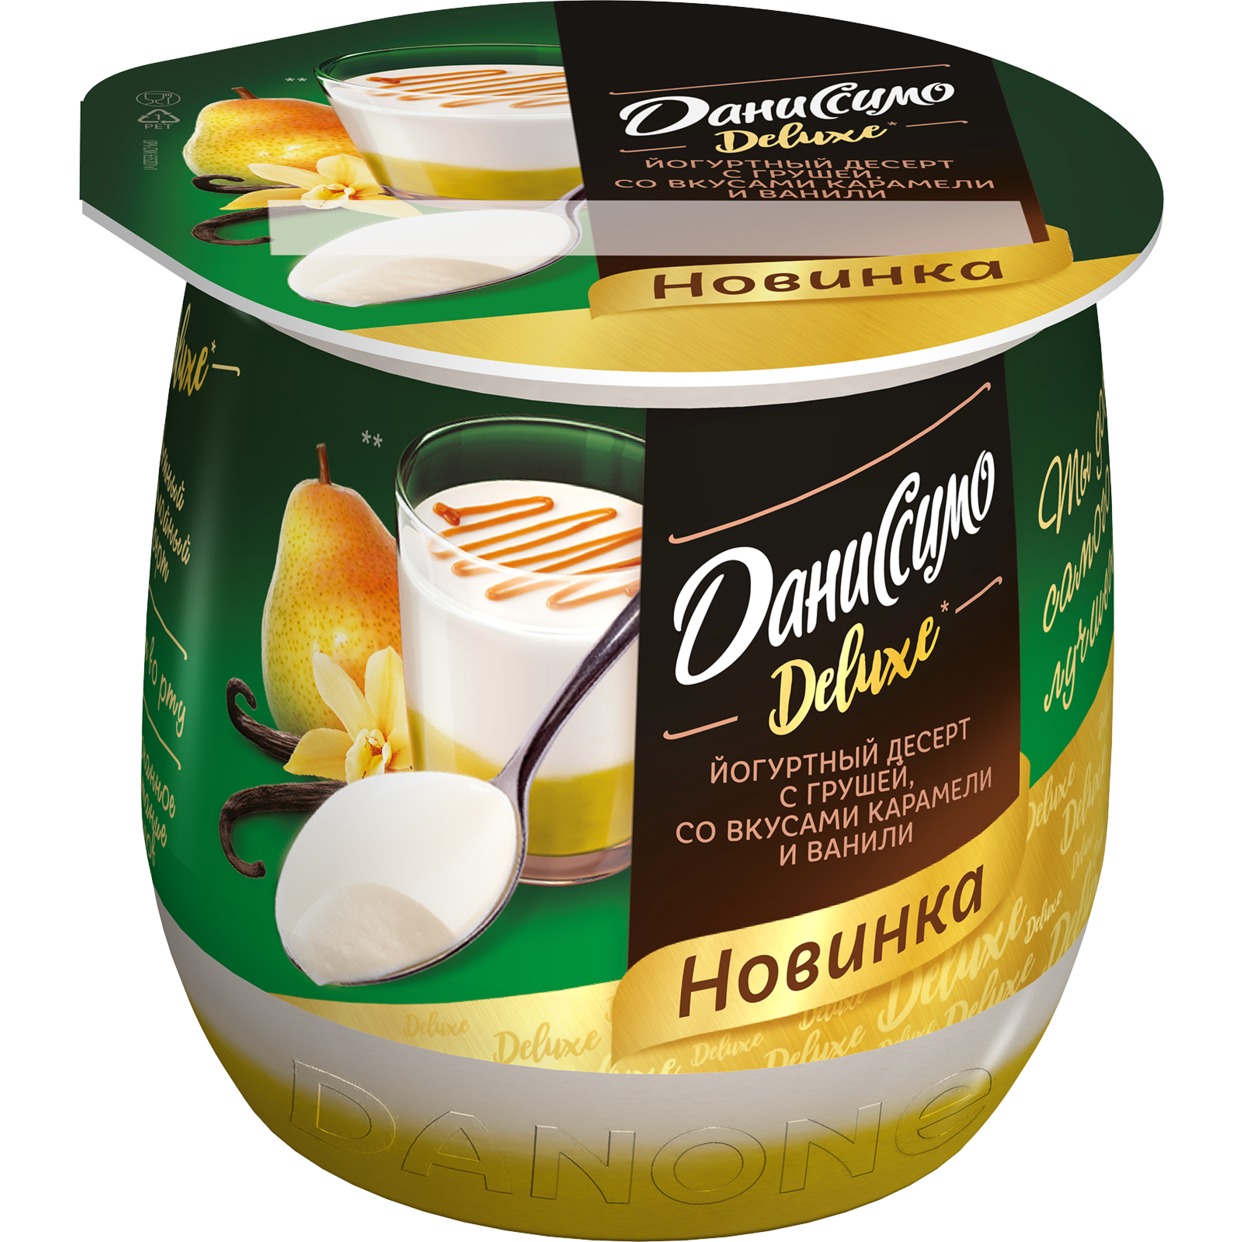 danissimo desert kislomolochnyy yogurtnyy termostatnyy s grushey so vkusami vanili i karameli deluxe puding 4 2 160g